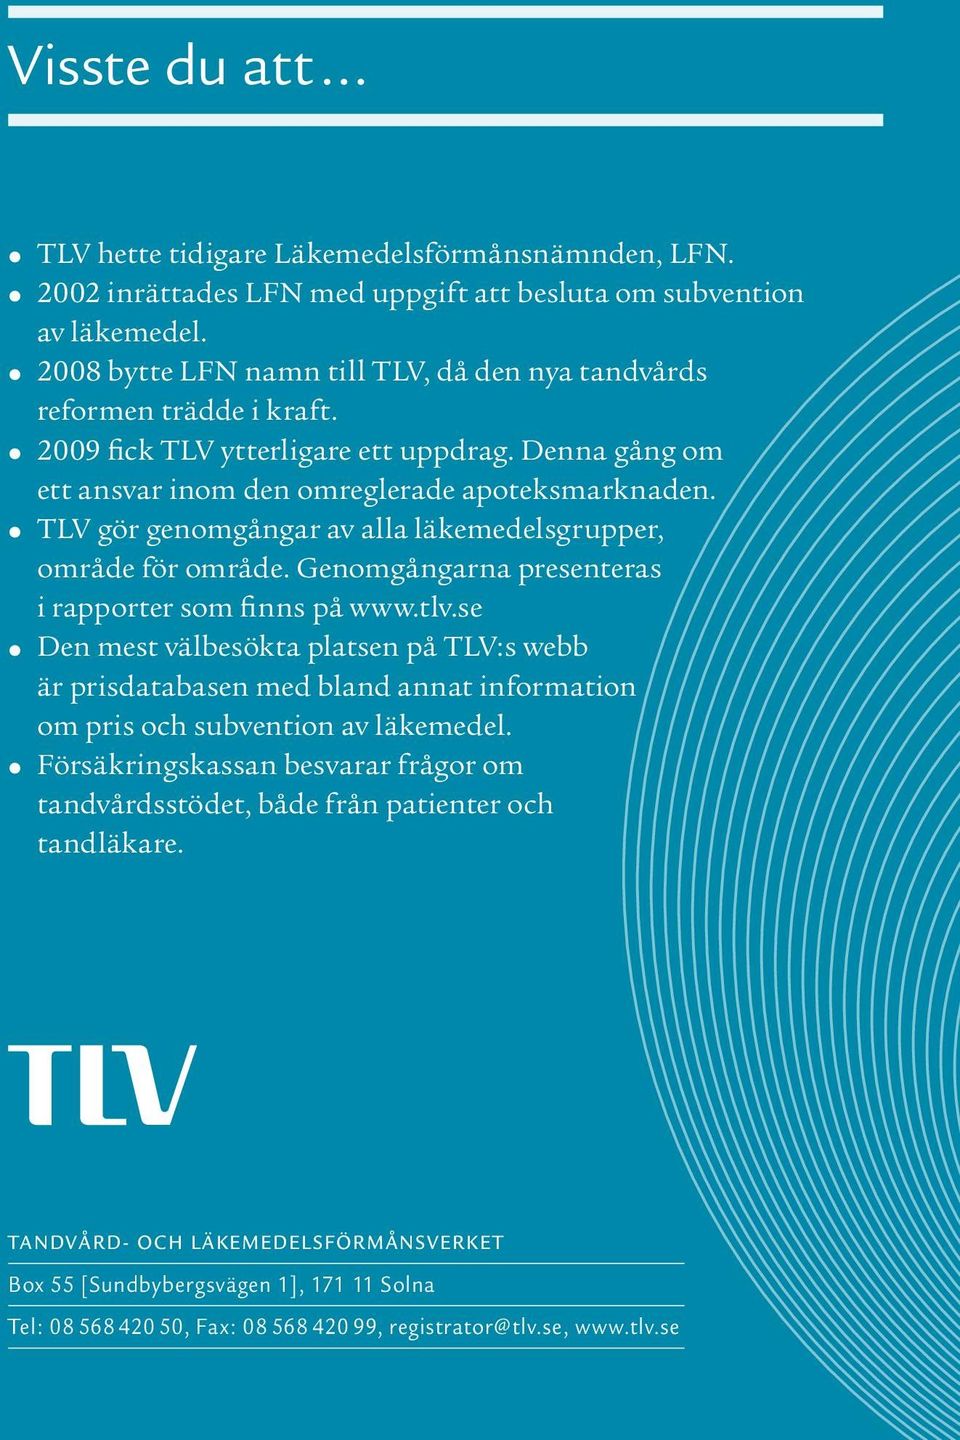 TLV gör genomgångar av alla läkemedelsgrupper, område för område. Genomgångarna presenteras i rapporter som finns på www.tlv.